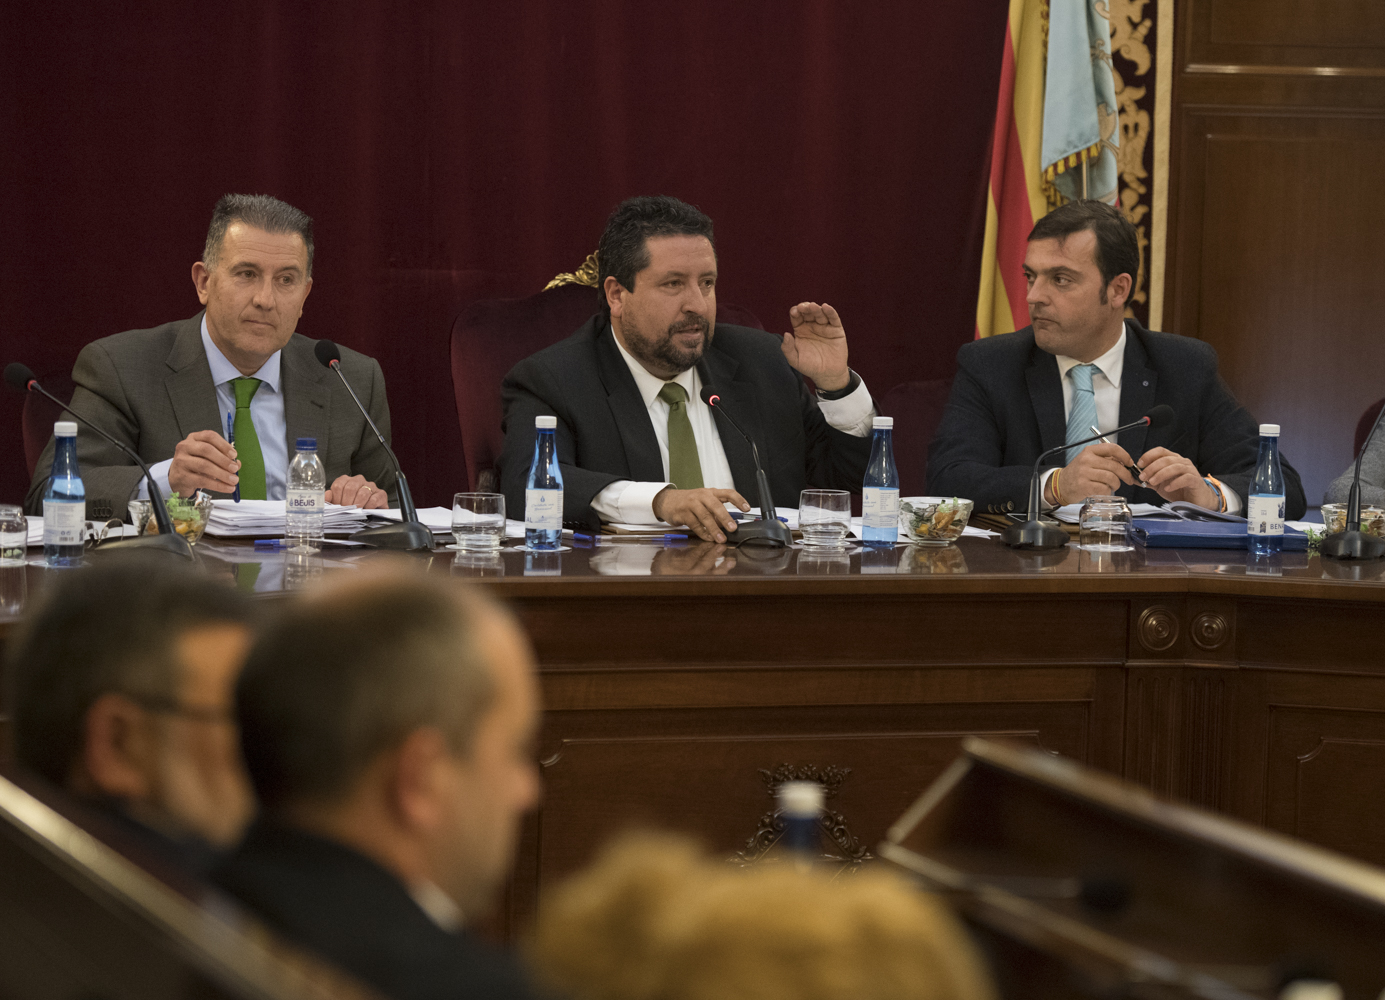 La Diputació insta a la Generalitat a garantir que tots els ajuntaments disposen d'agents de policia suficients per garantir la seguretat